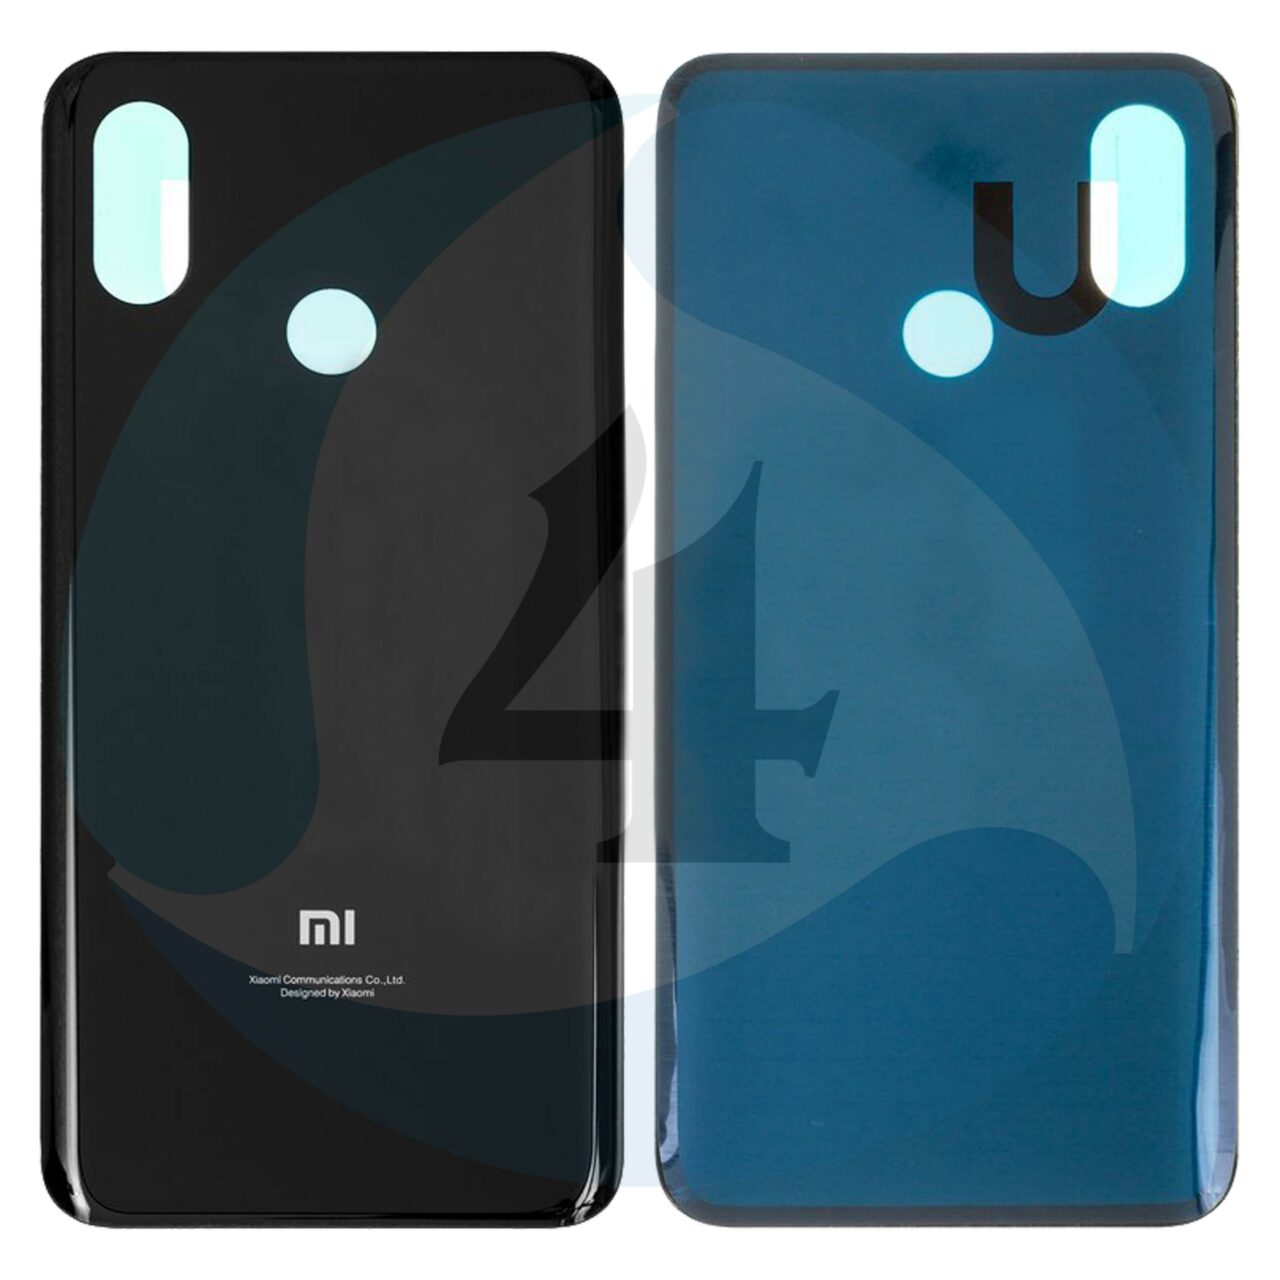 Backcover Black For Xiaomi Mi 8 M1803 E1 A